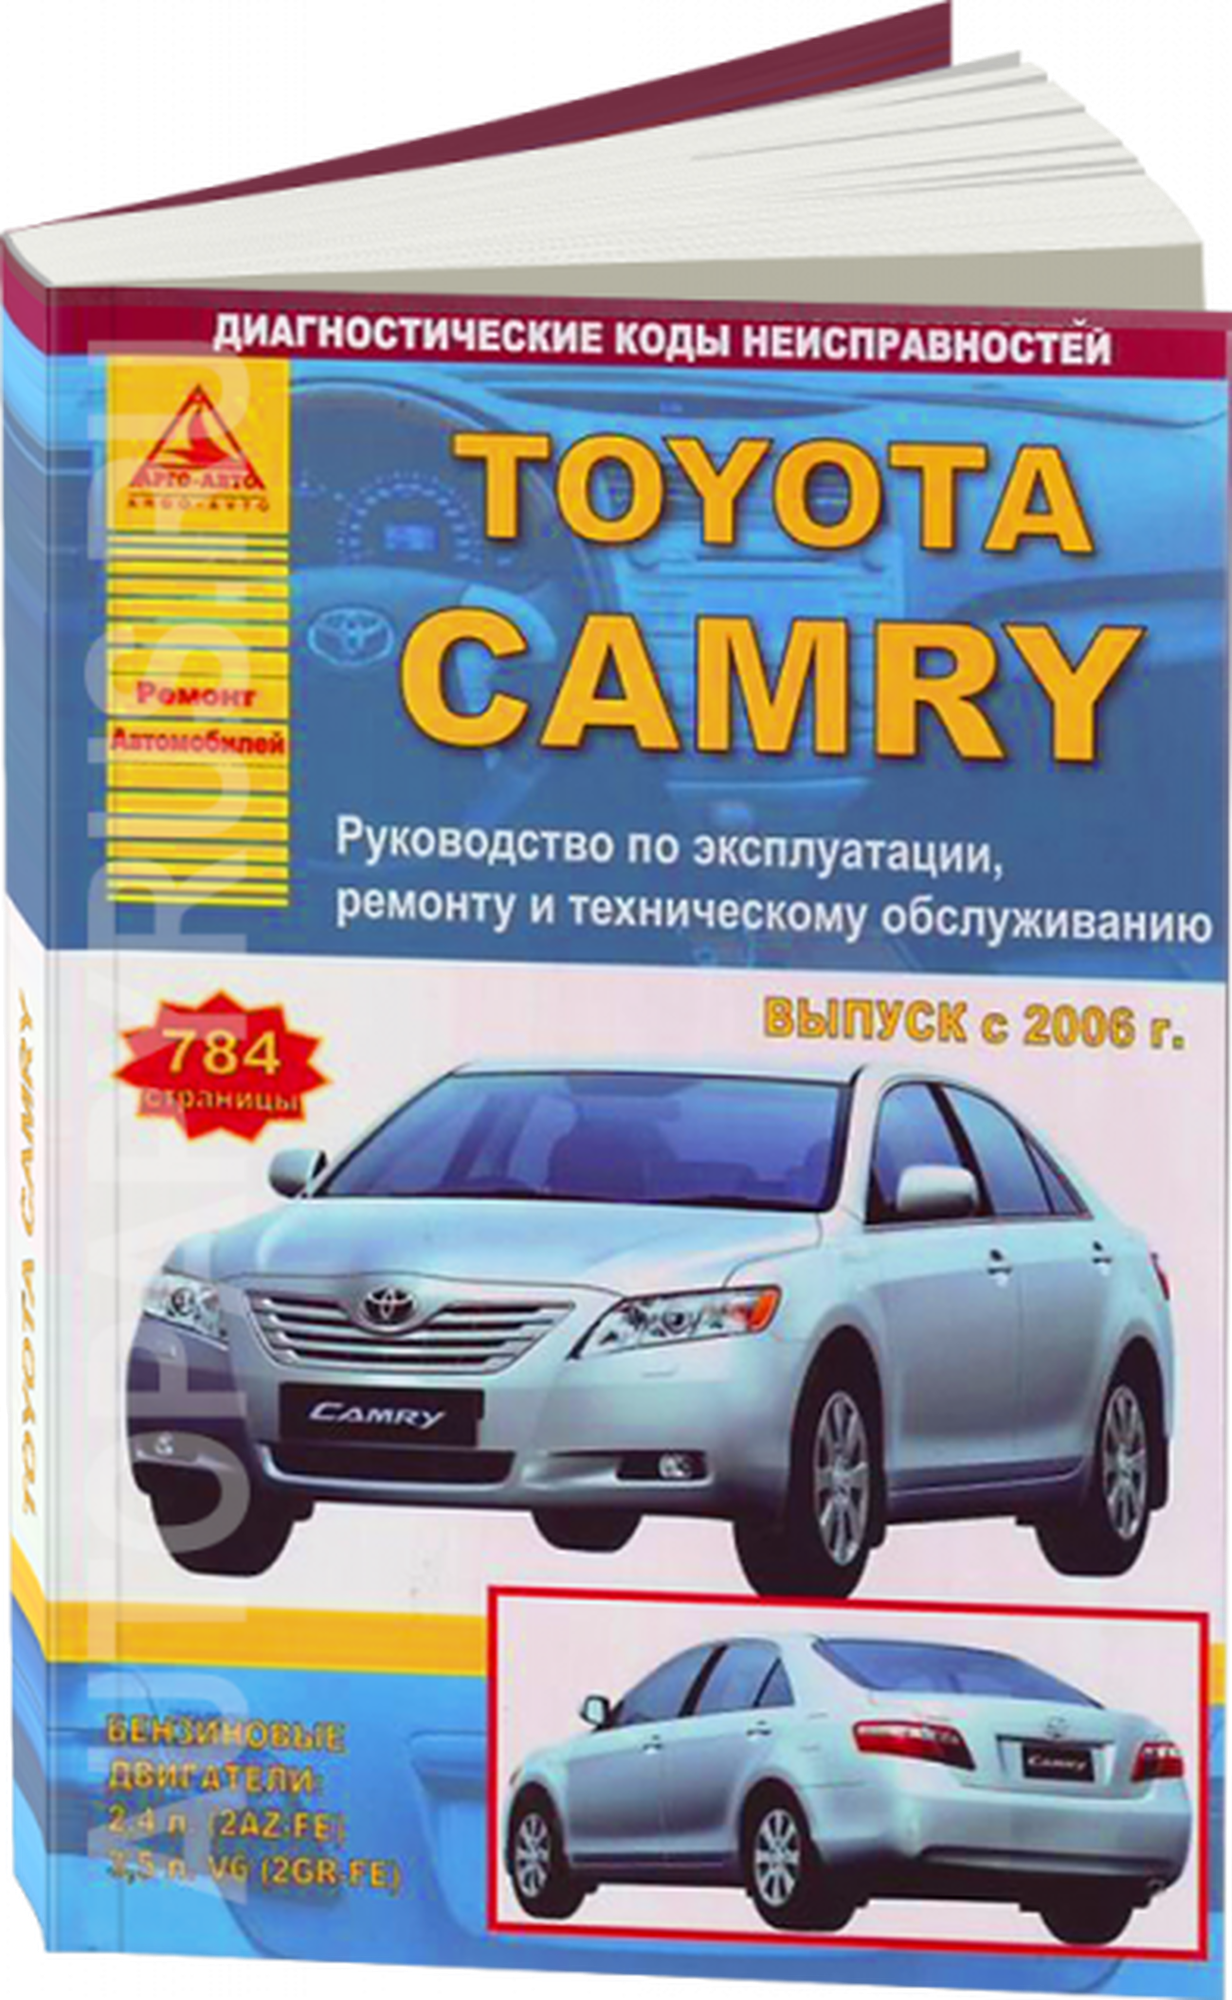 Автокнига: руководство / инструкция по ремонту и эксплуатации TOYOTA CAMRY (тойота камри) бензин с 2006 года выпуска, 978-5-9545-0092-9, издательство Арго-Авто